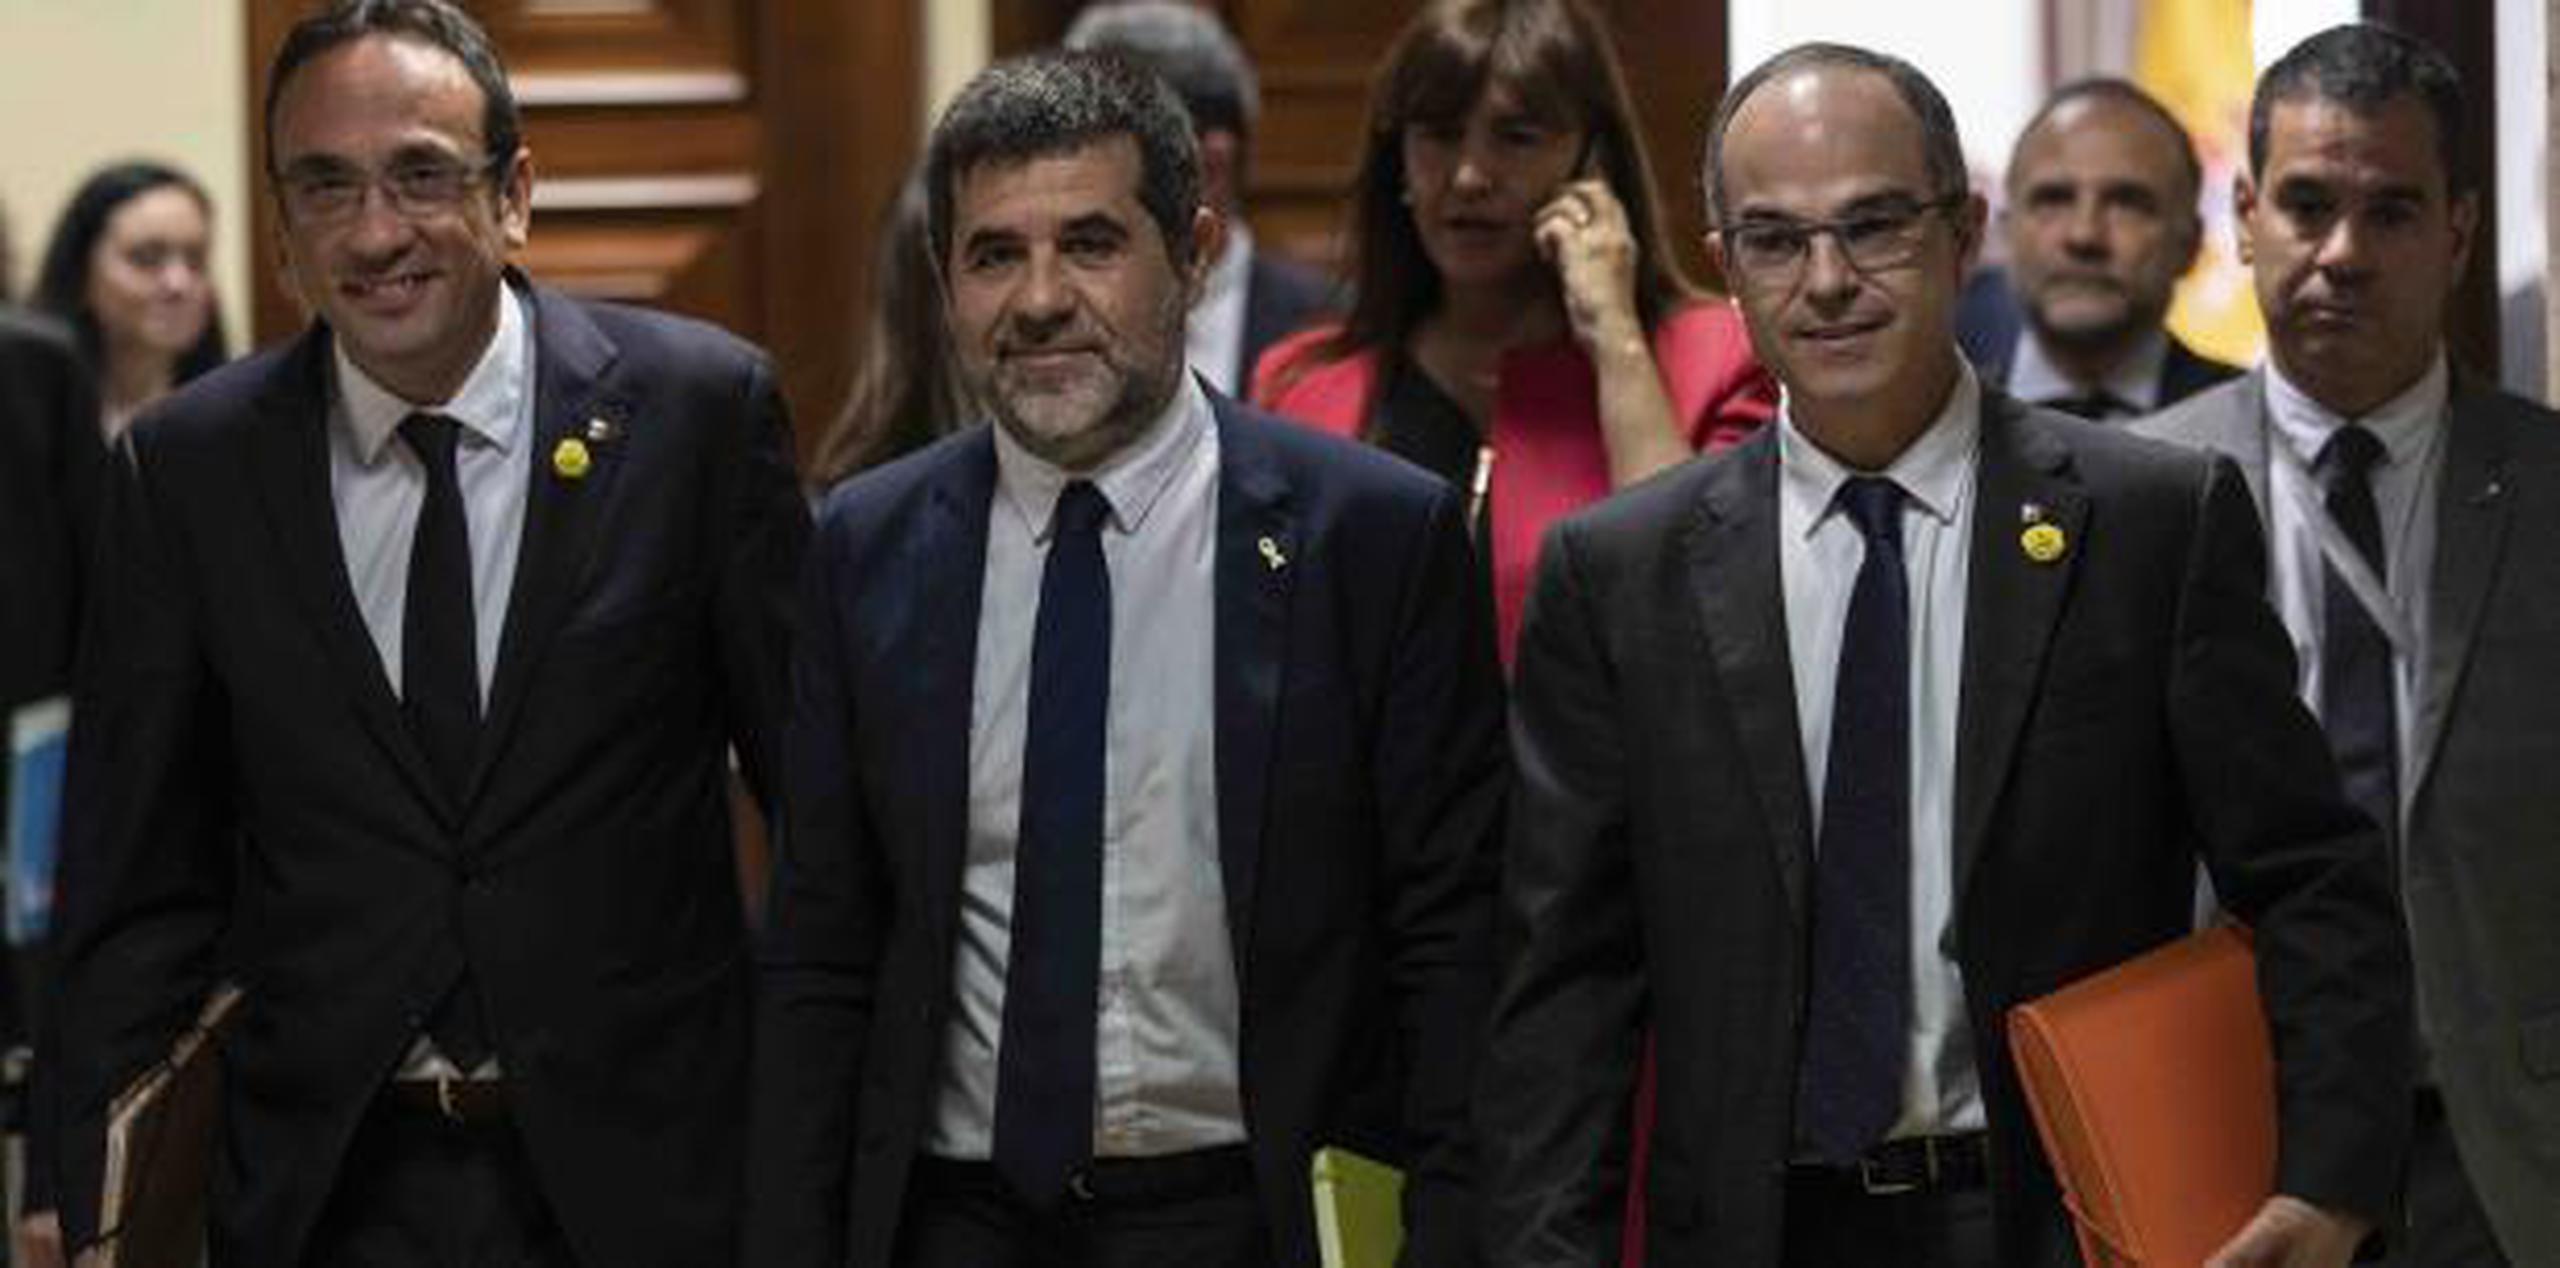 Desde la izquierda Josep Rull, Jordi Sánchez y Jordi Turull sonríen en su visita al parlamento para recoger sus credenciales como integrantes del cuerpo legislativo. (AP)